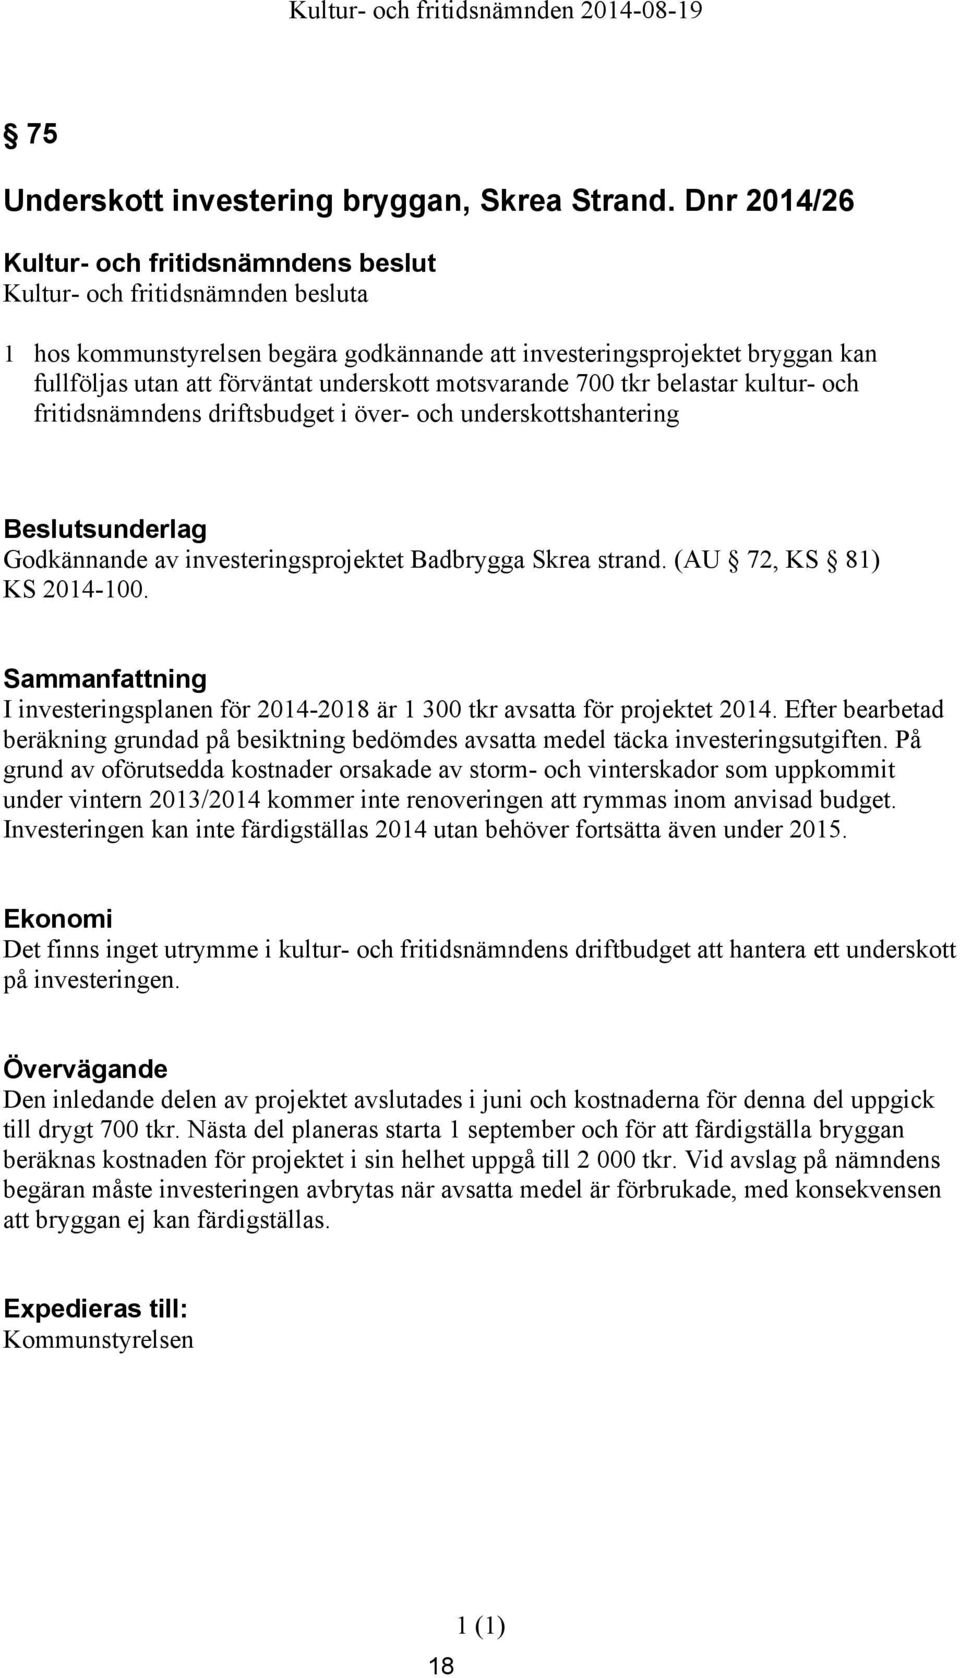 driftsbudget i över- och underskottshantering Godkännande av investeringsprojektet Badbrygga Skrea strand. (AU 72, KS 81) KS 2014-100.